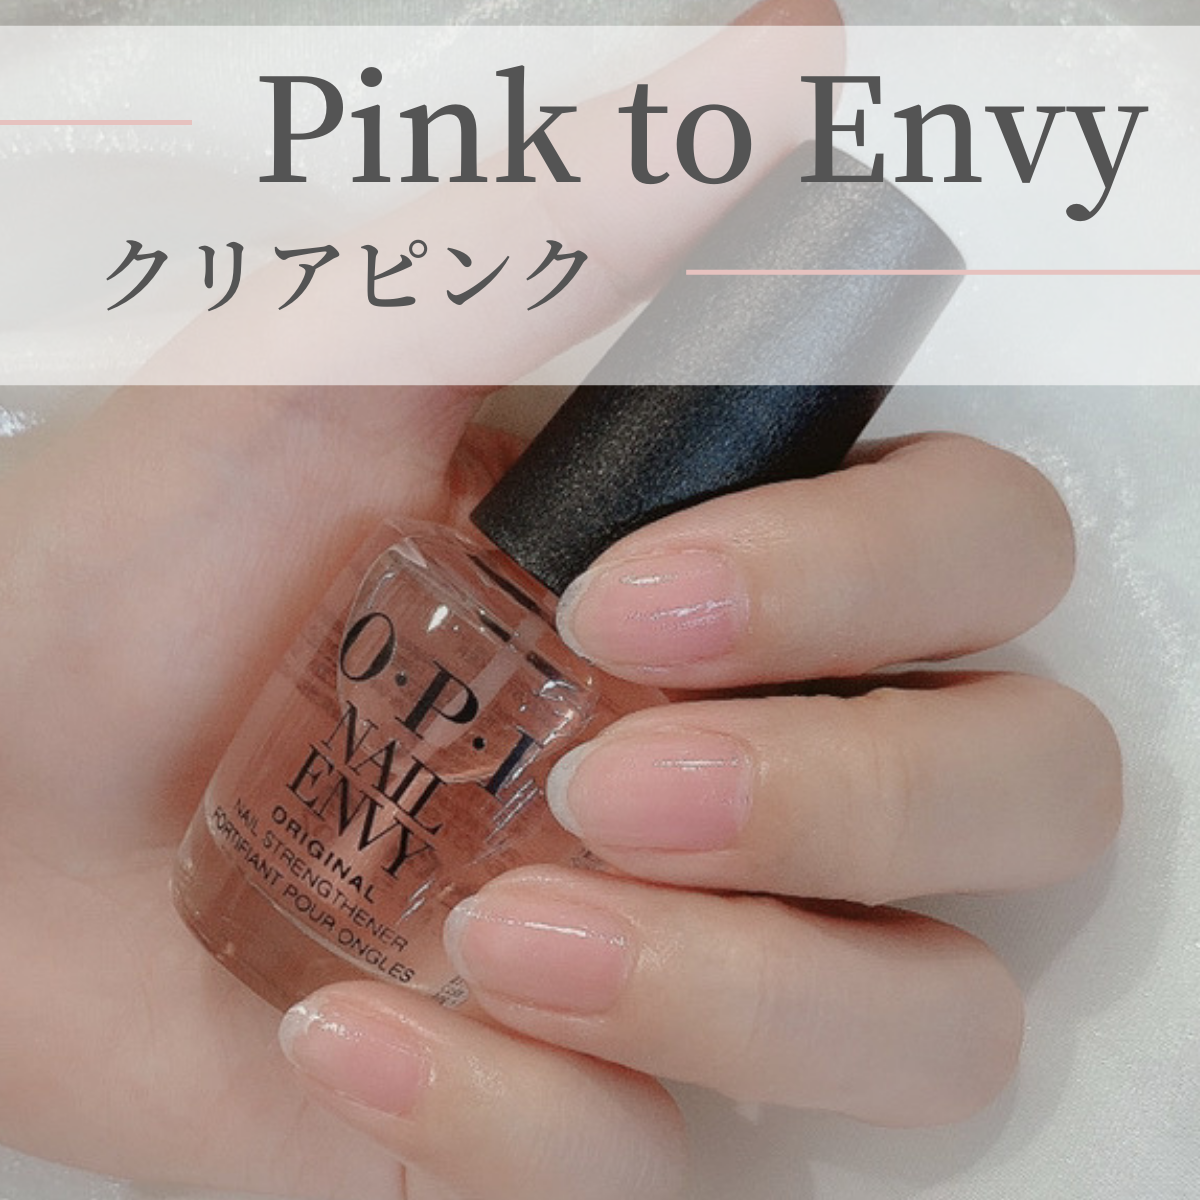 国内正規品 OPI オーピーアイ ネイルエンビー NL 223 Pink to Envy ピンク トゥ エンビー 15ml カラー 爪強化剤 爪割れ  薄い爪 二枚爪 ネイルケア ベースコート opi